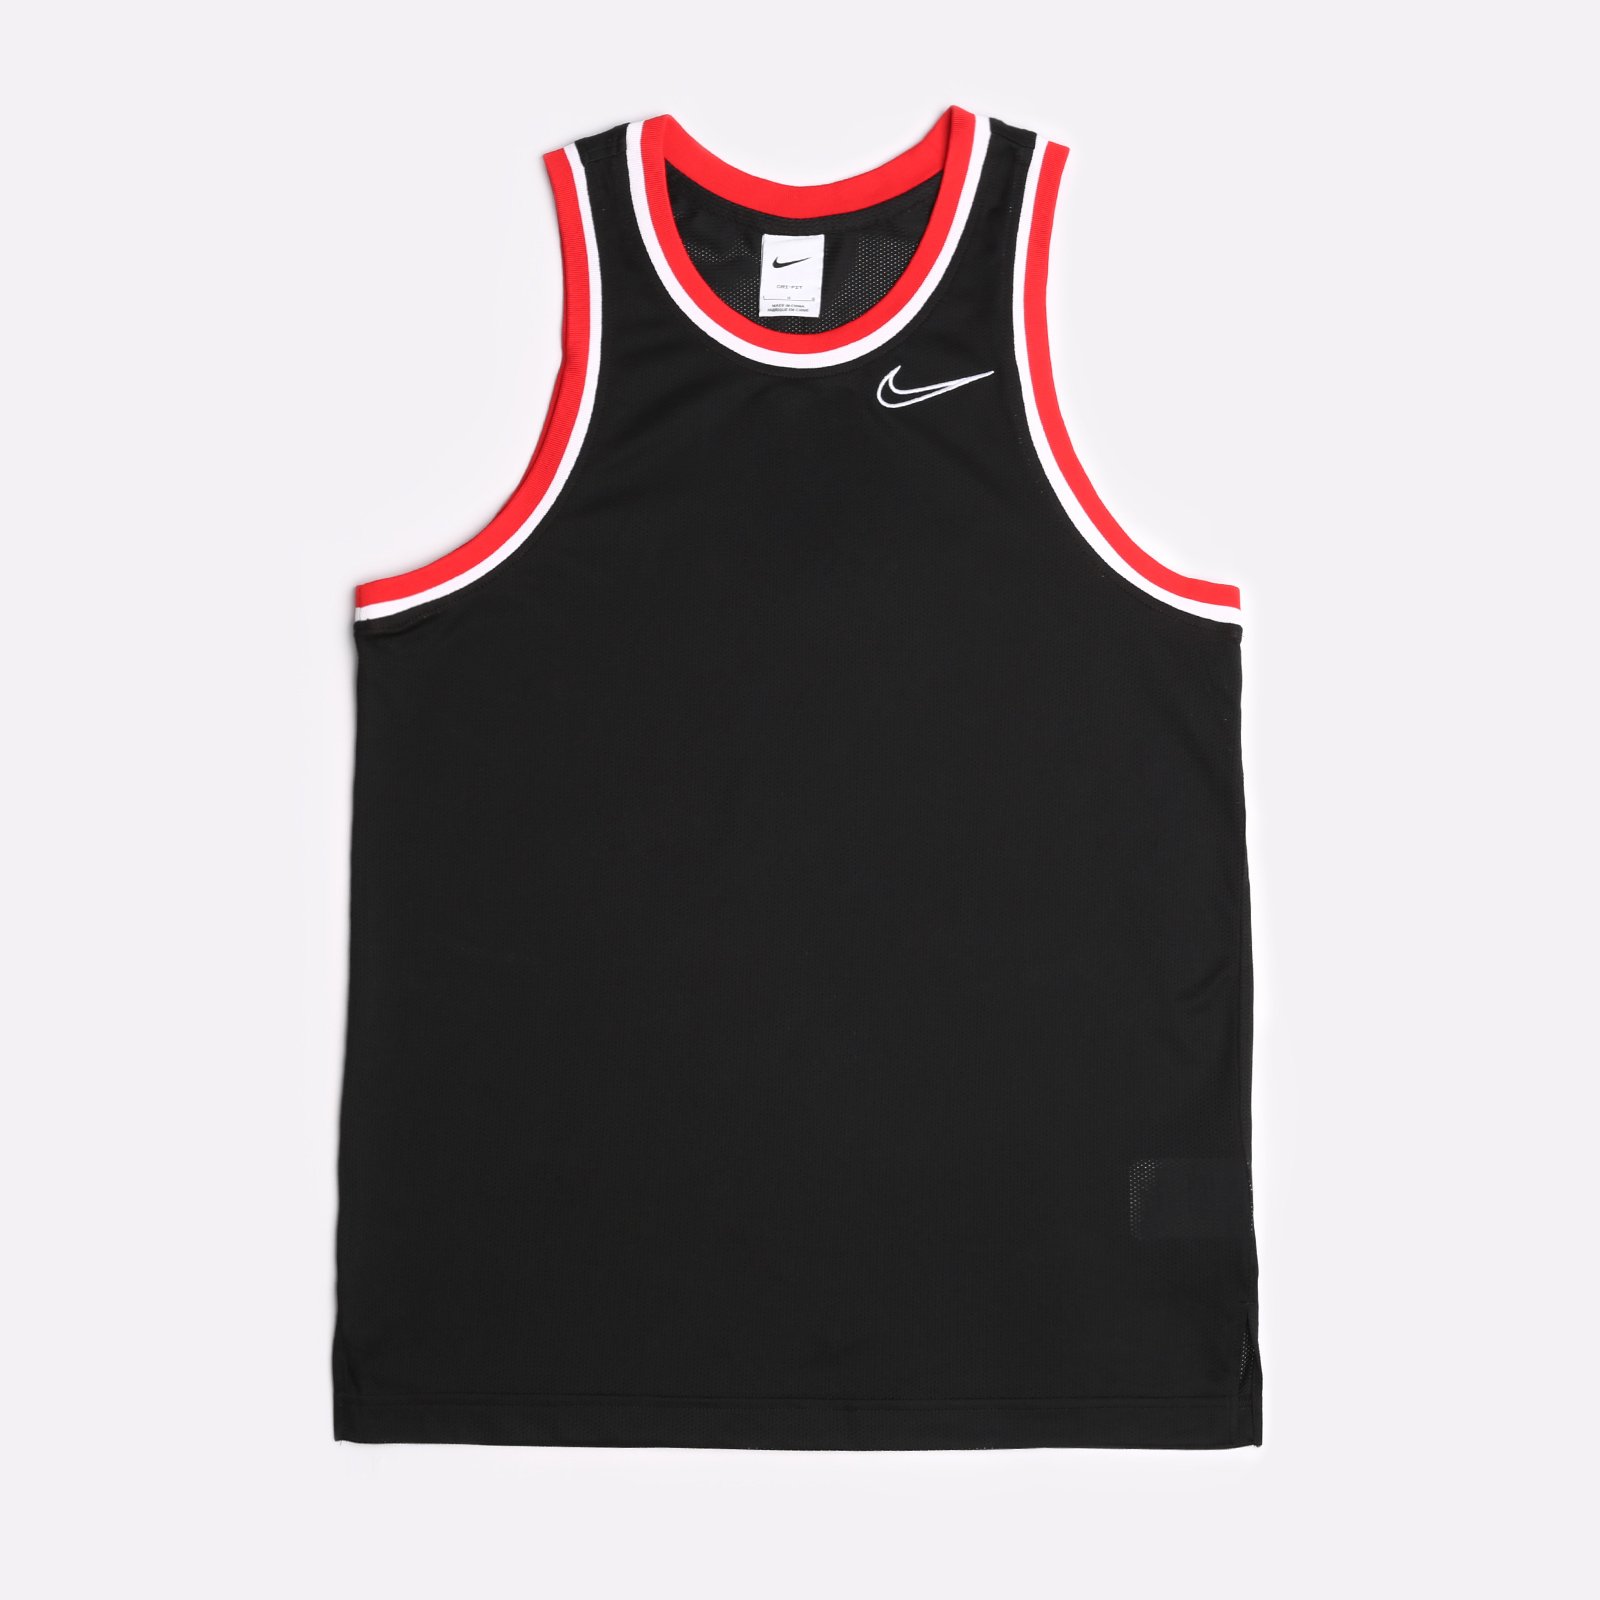 мужская майка Nike Dri-FIT Classic Training Basketball Jersey  (DB2081-011)  - цена, описание, фото 1